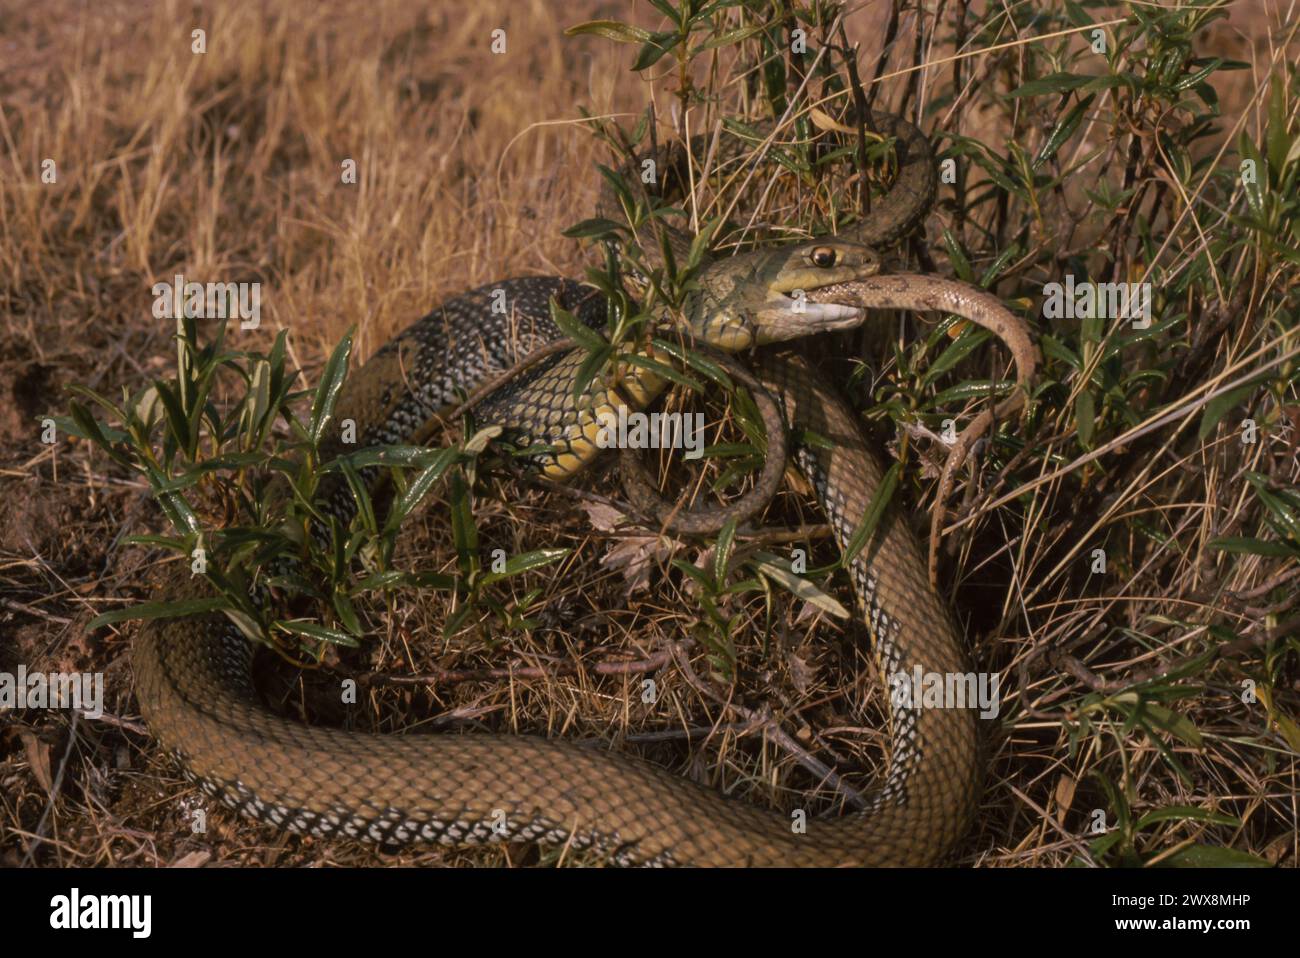 Montpellier Snake (Malpolon monspessulanus) eating another snake Stock Photo